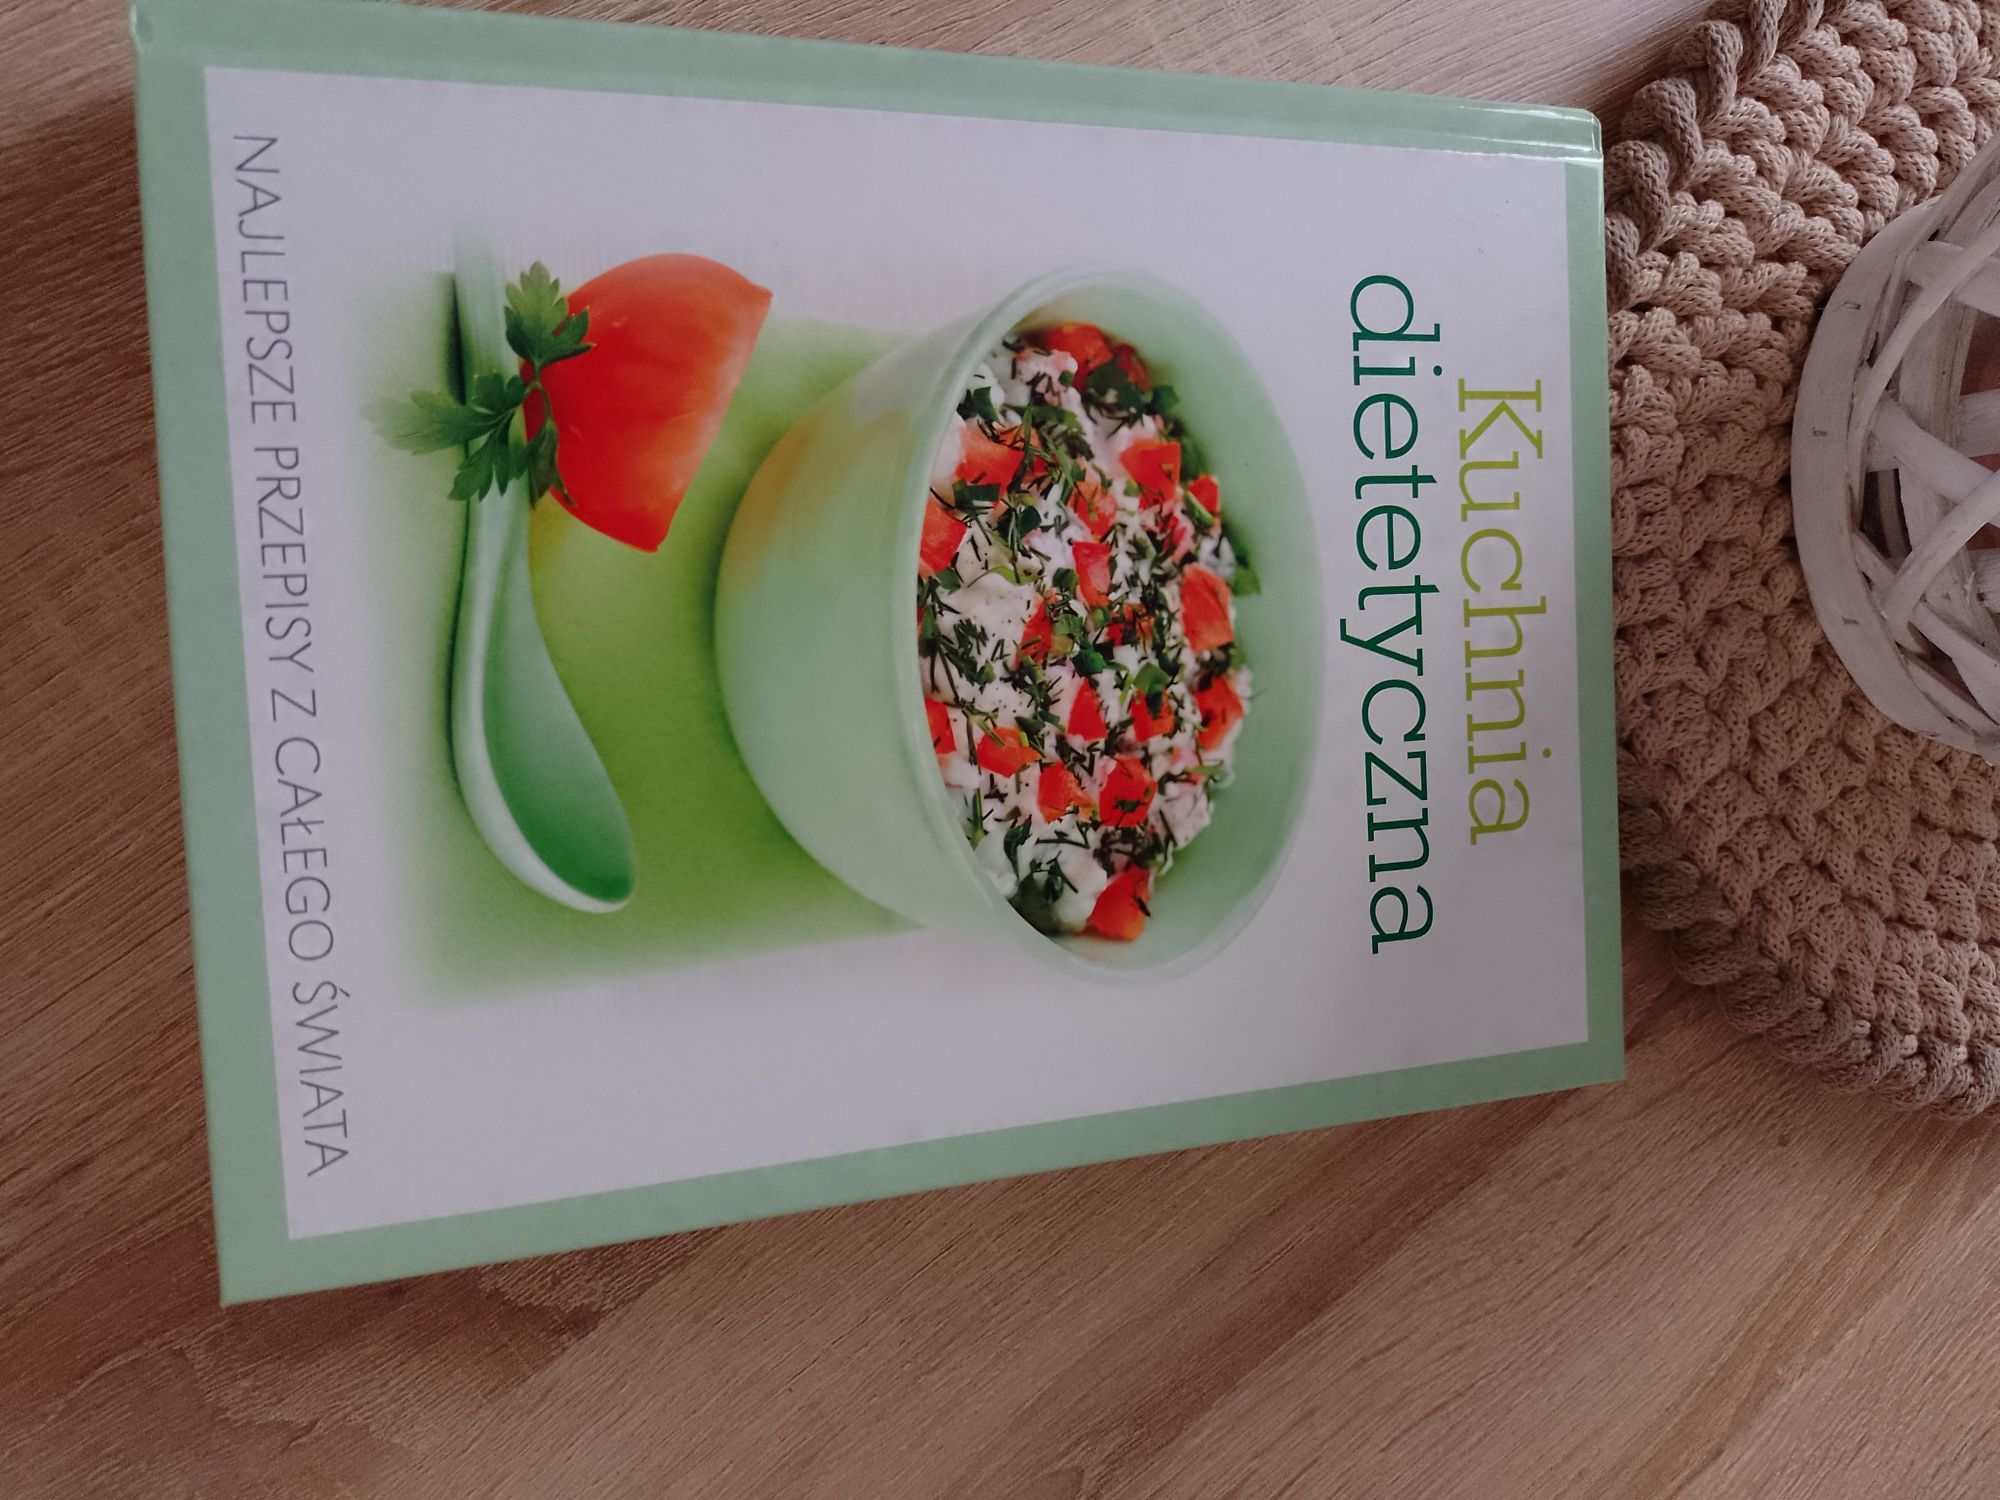 Książka pt. Kuchnia dietetyczna